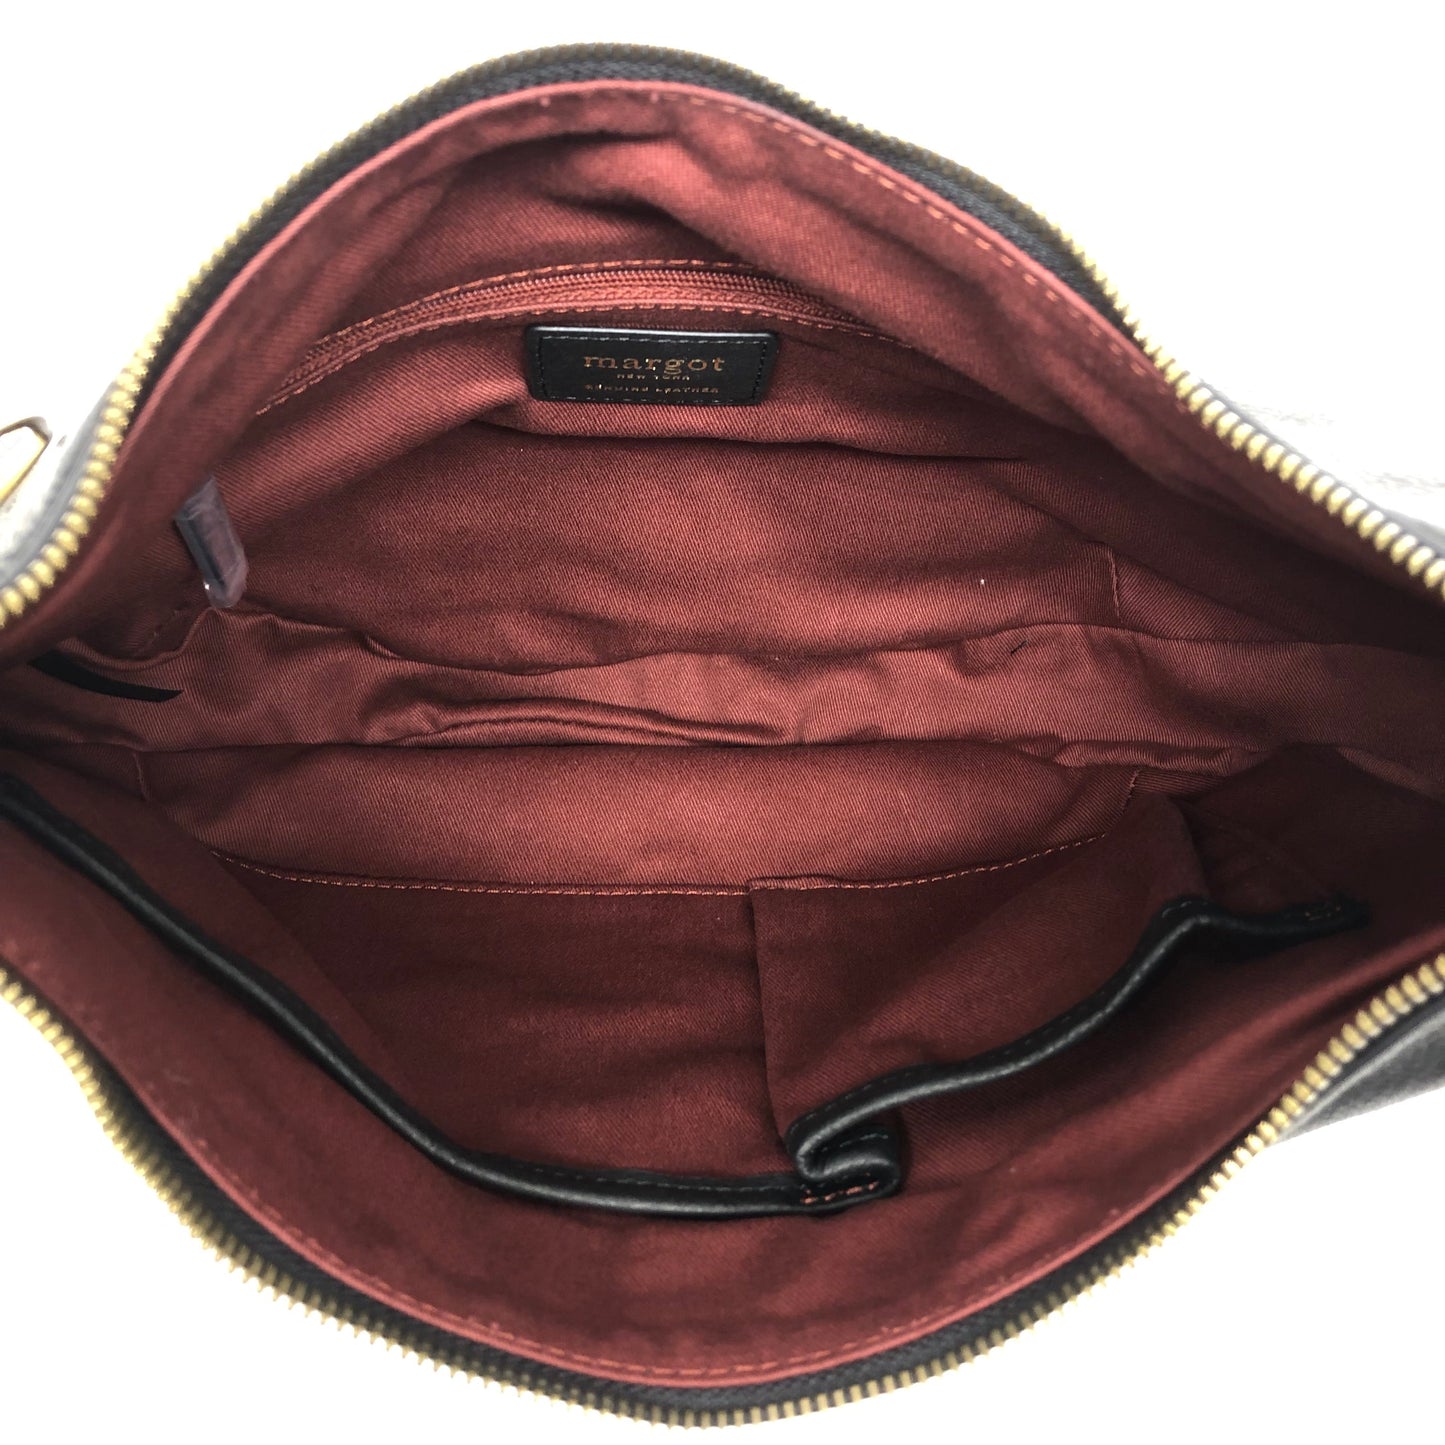 Handbag Designer By Margot  Size: Medium